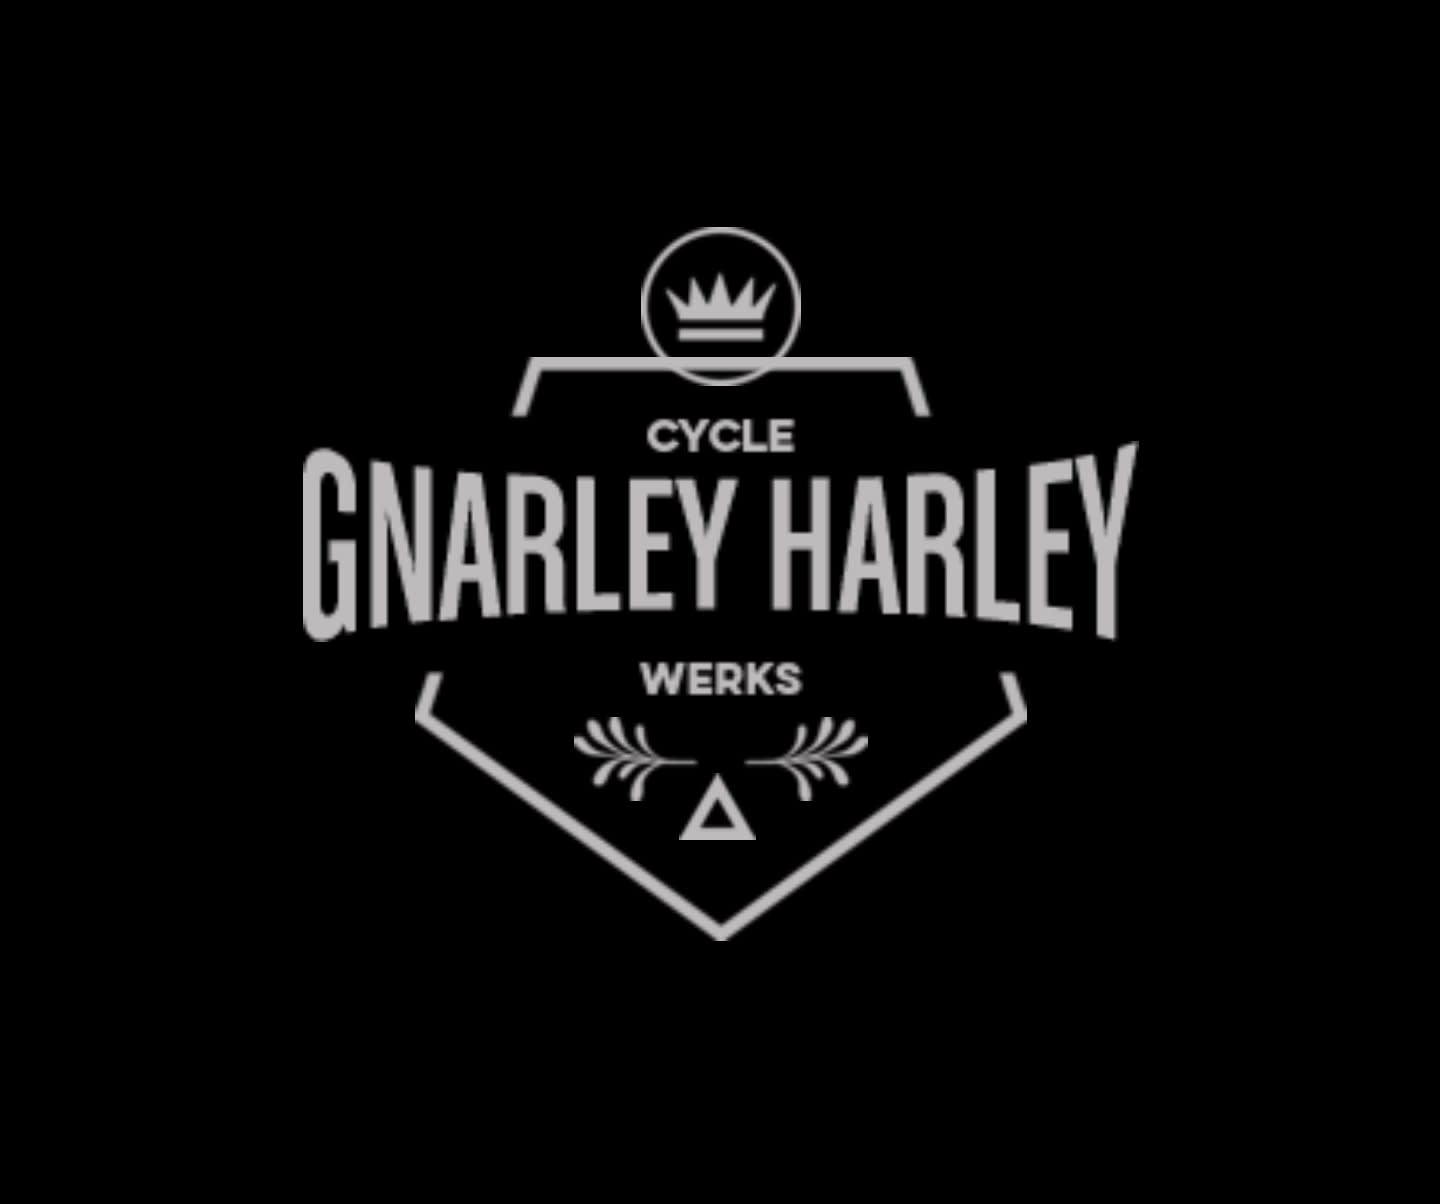 Gnarley Harley Cycle Werks